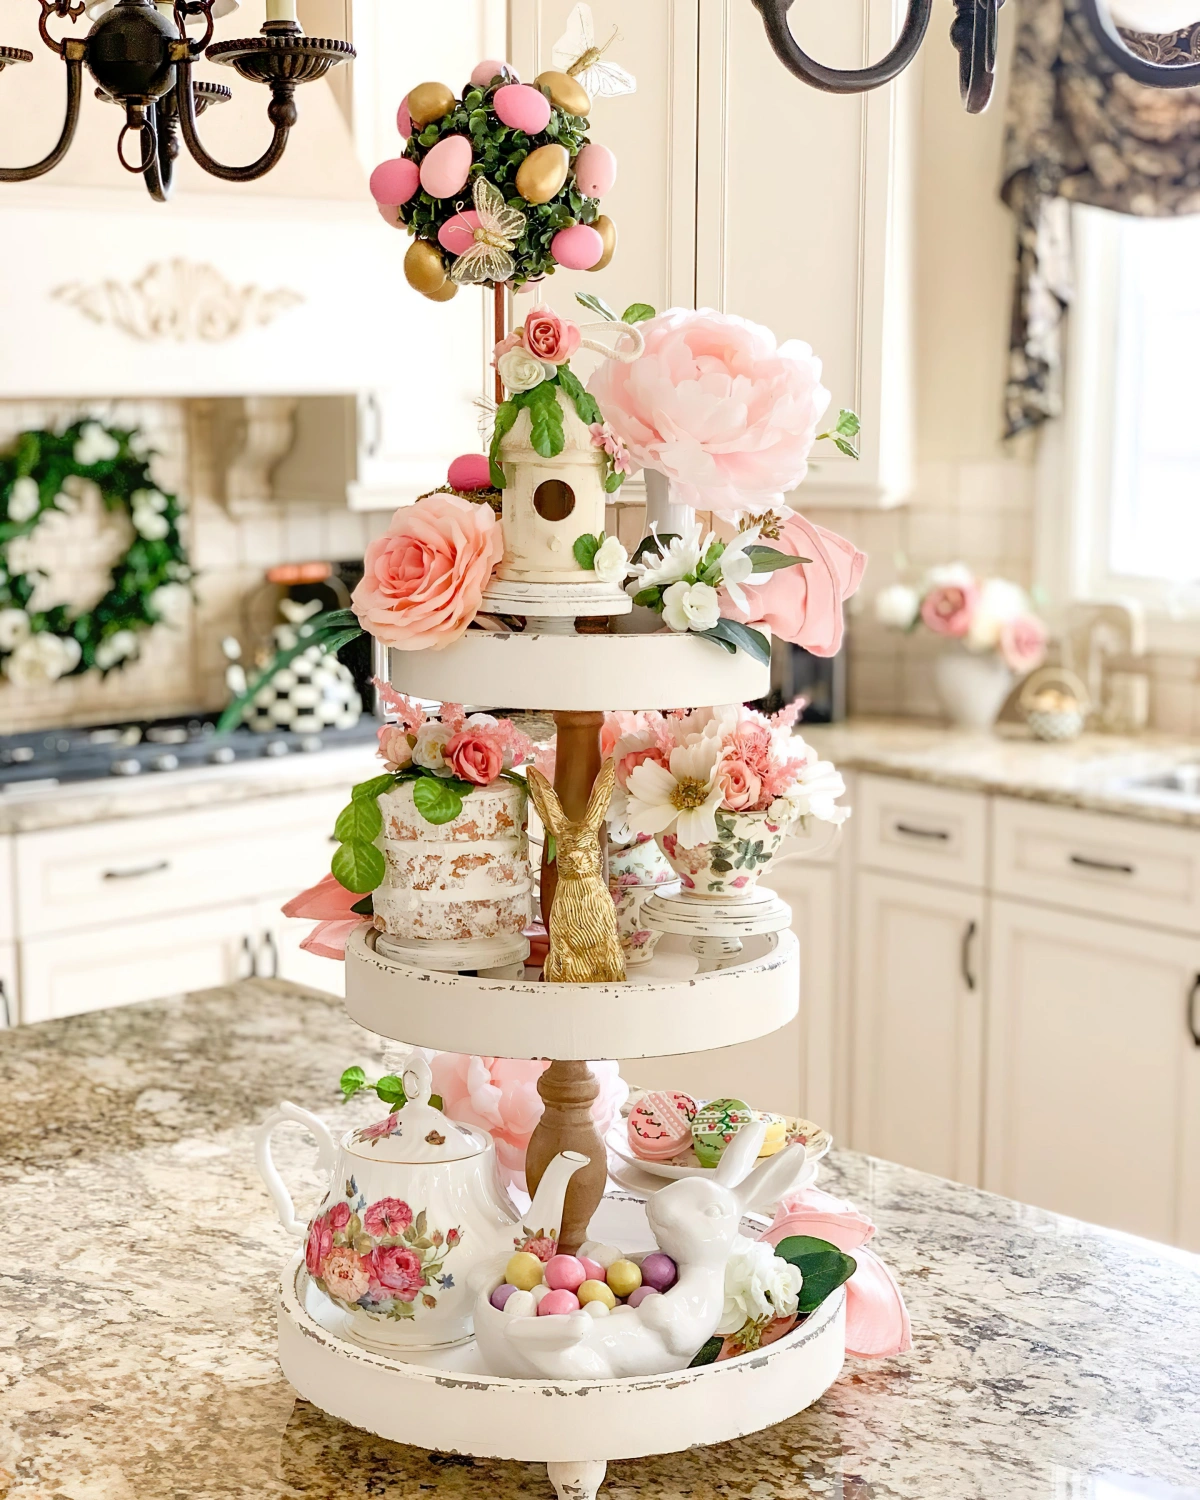 plateau gateau niveaux figurines lapins oeufs fleurs roses ilot cuisine